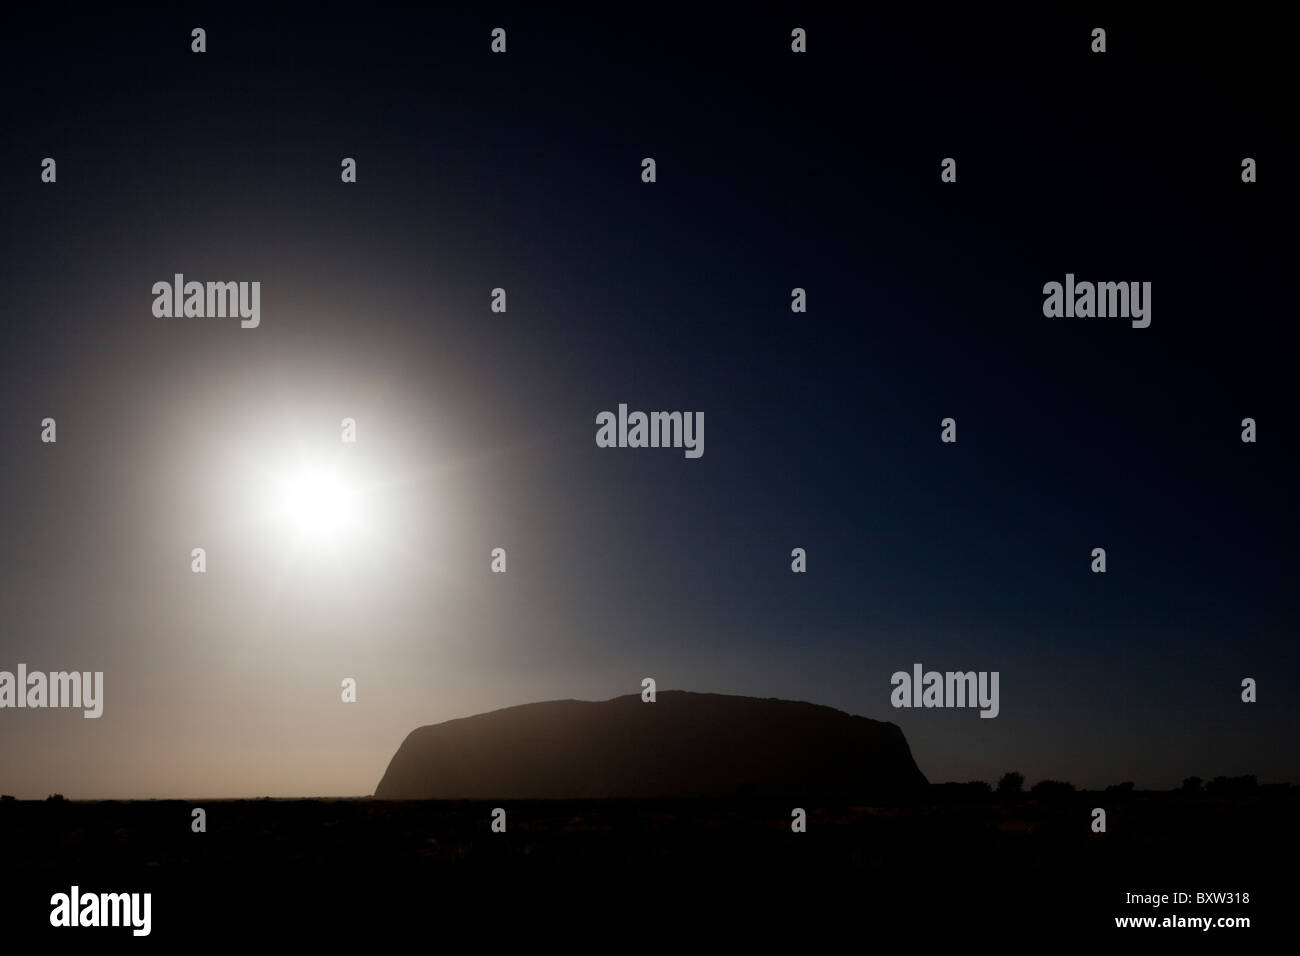 L'Australie, Territoire du Nord, Uluru - Kata Tjuta National Park, le soleil se lève au-dessus de Ayers Rock sur matin d'été Banque D'Images